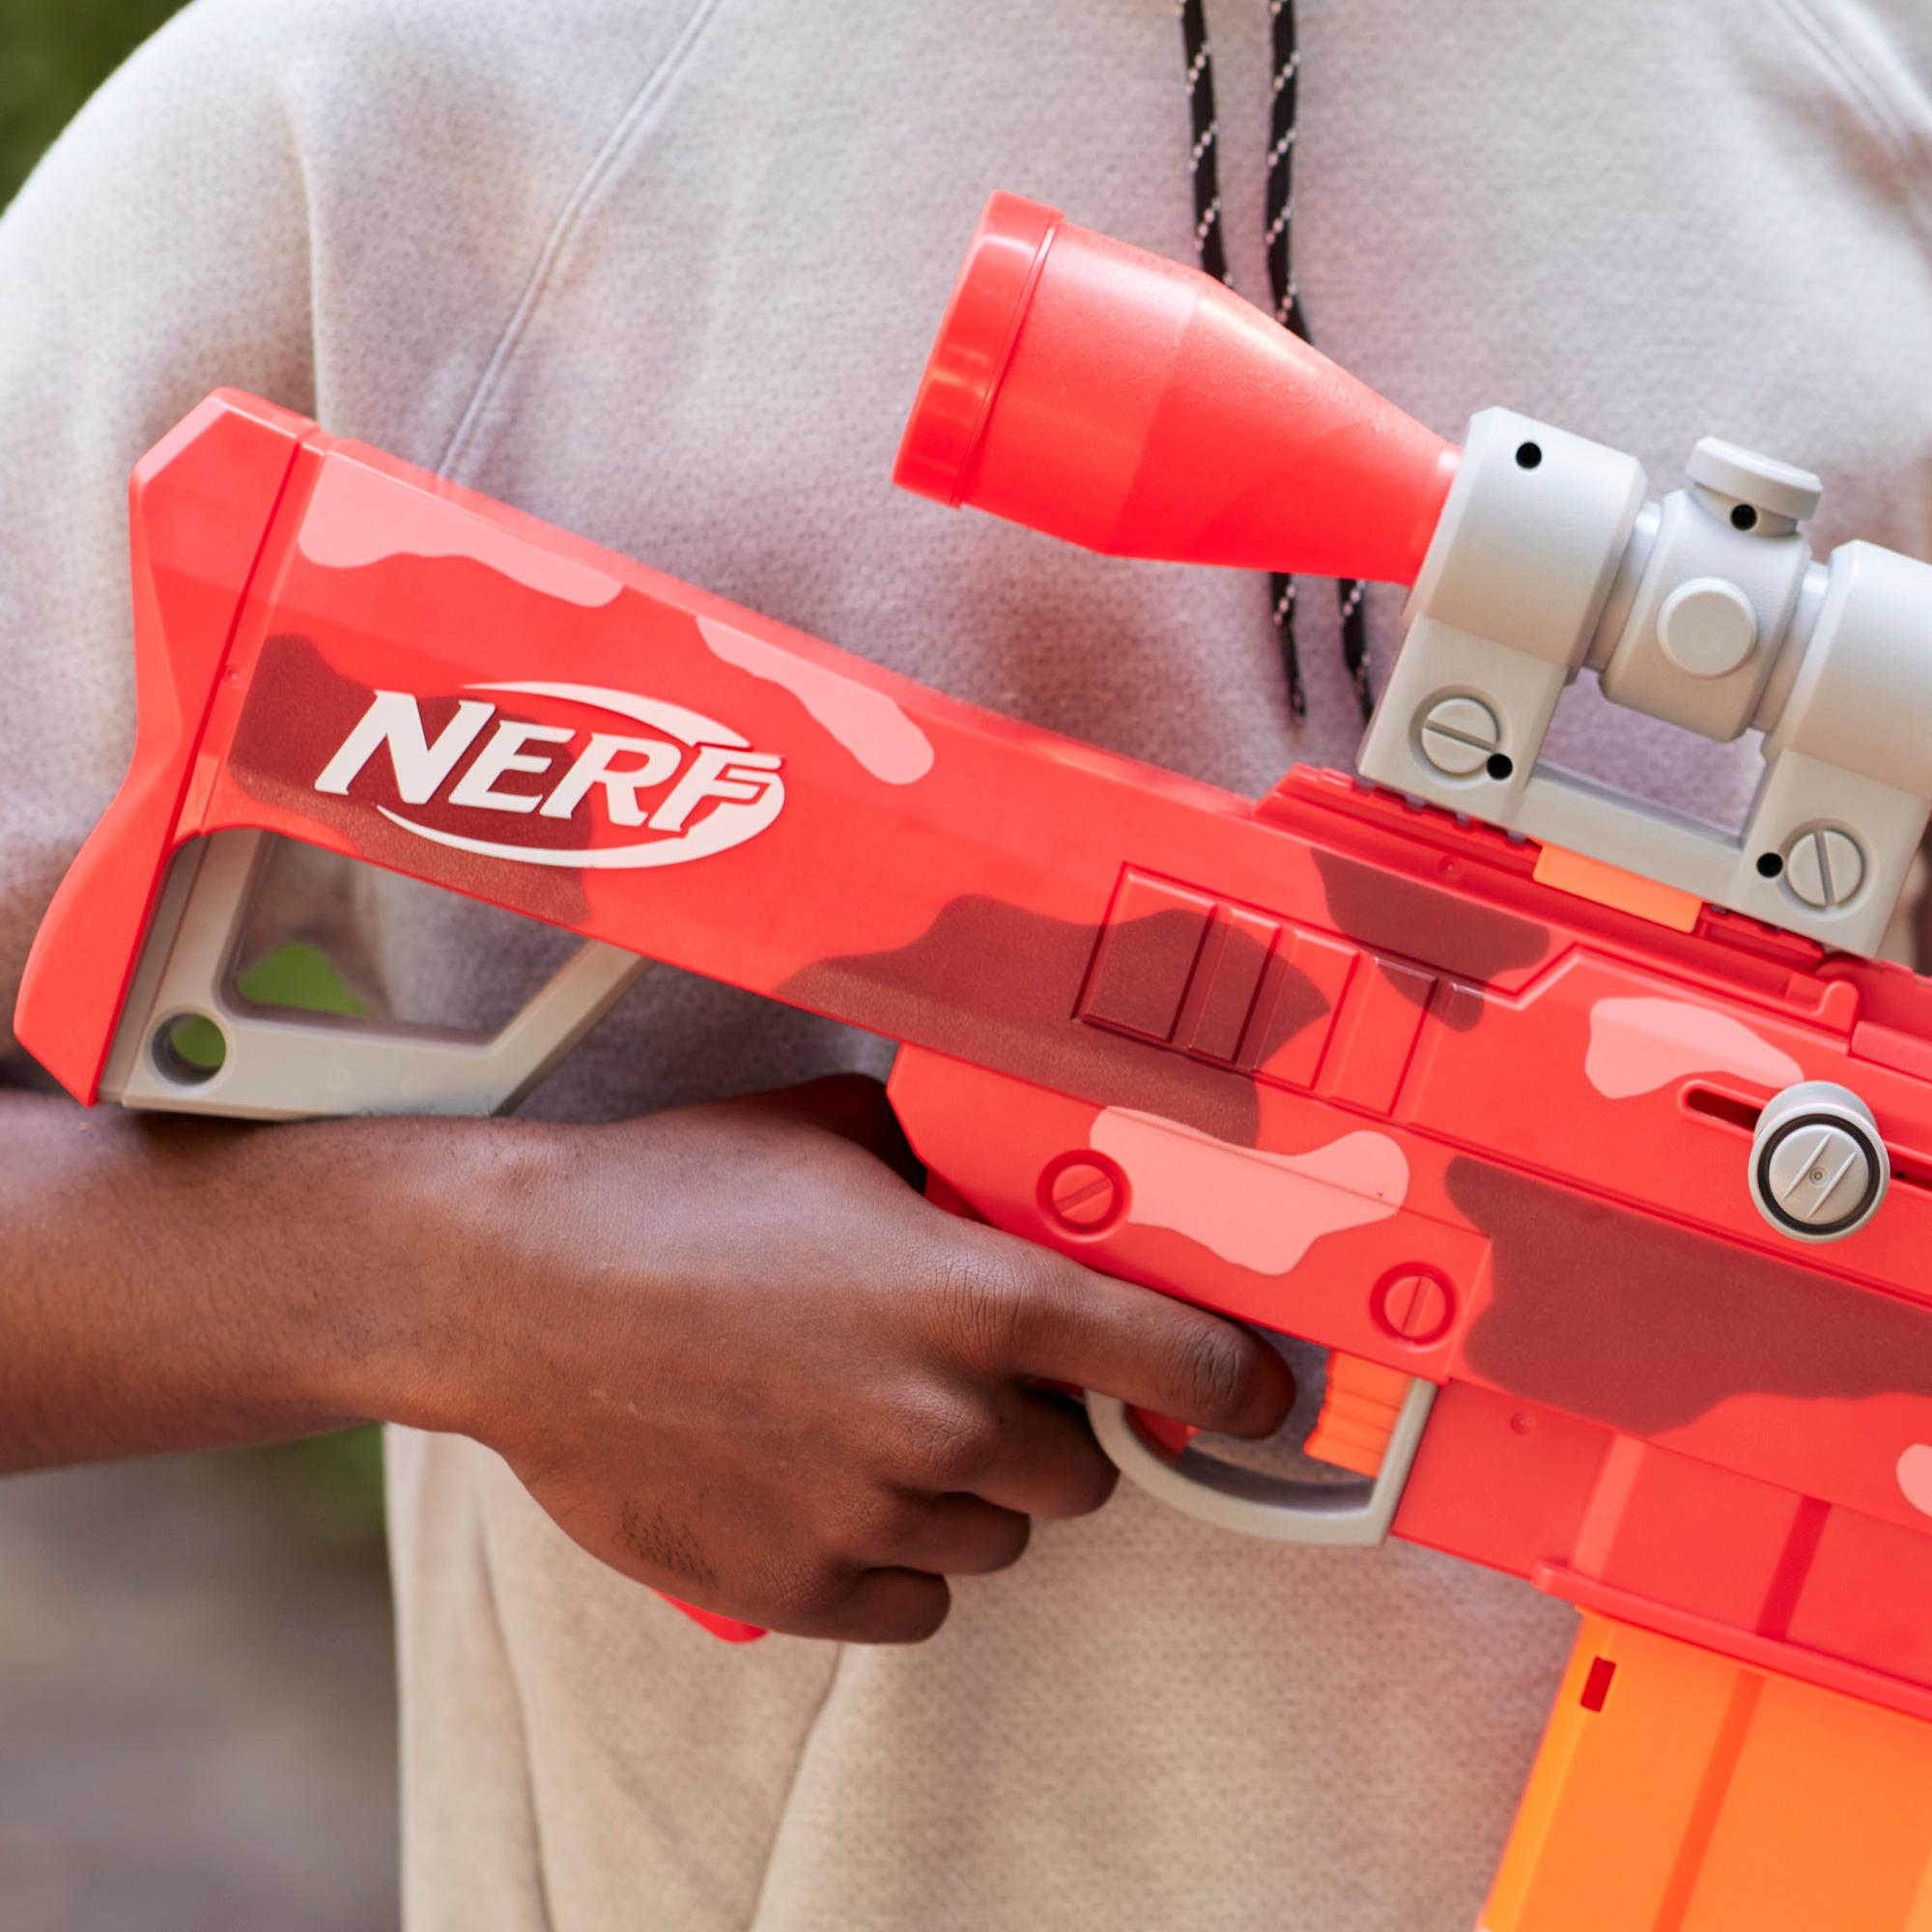 Nerf Heavy Dart-Firing Fortnite Blaster SR E 